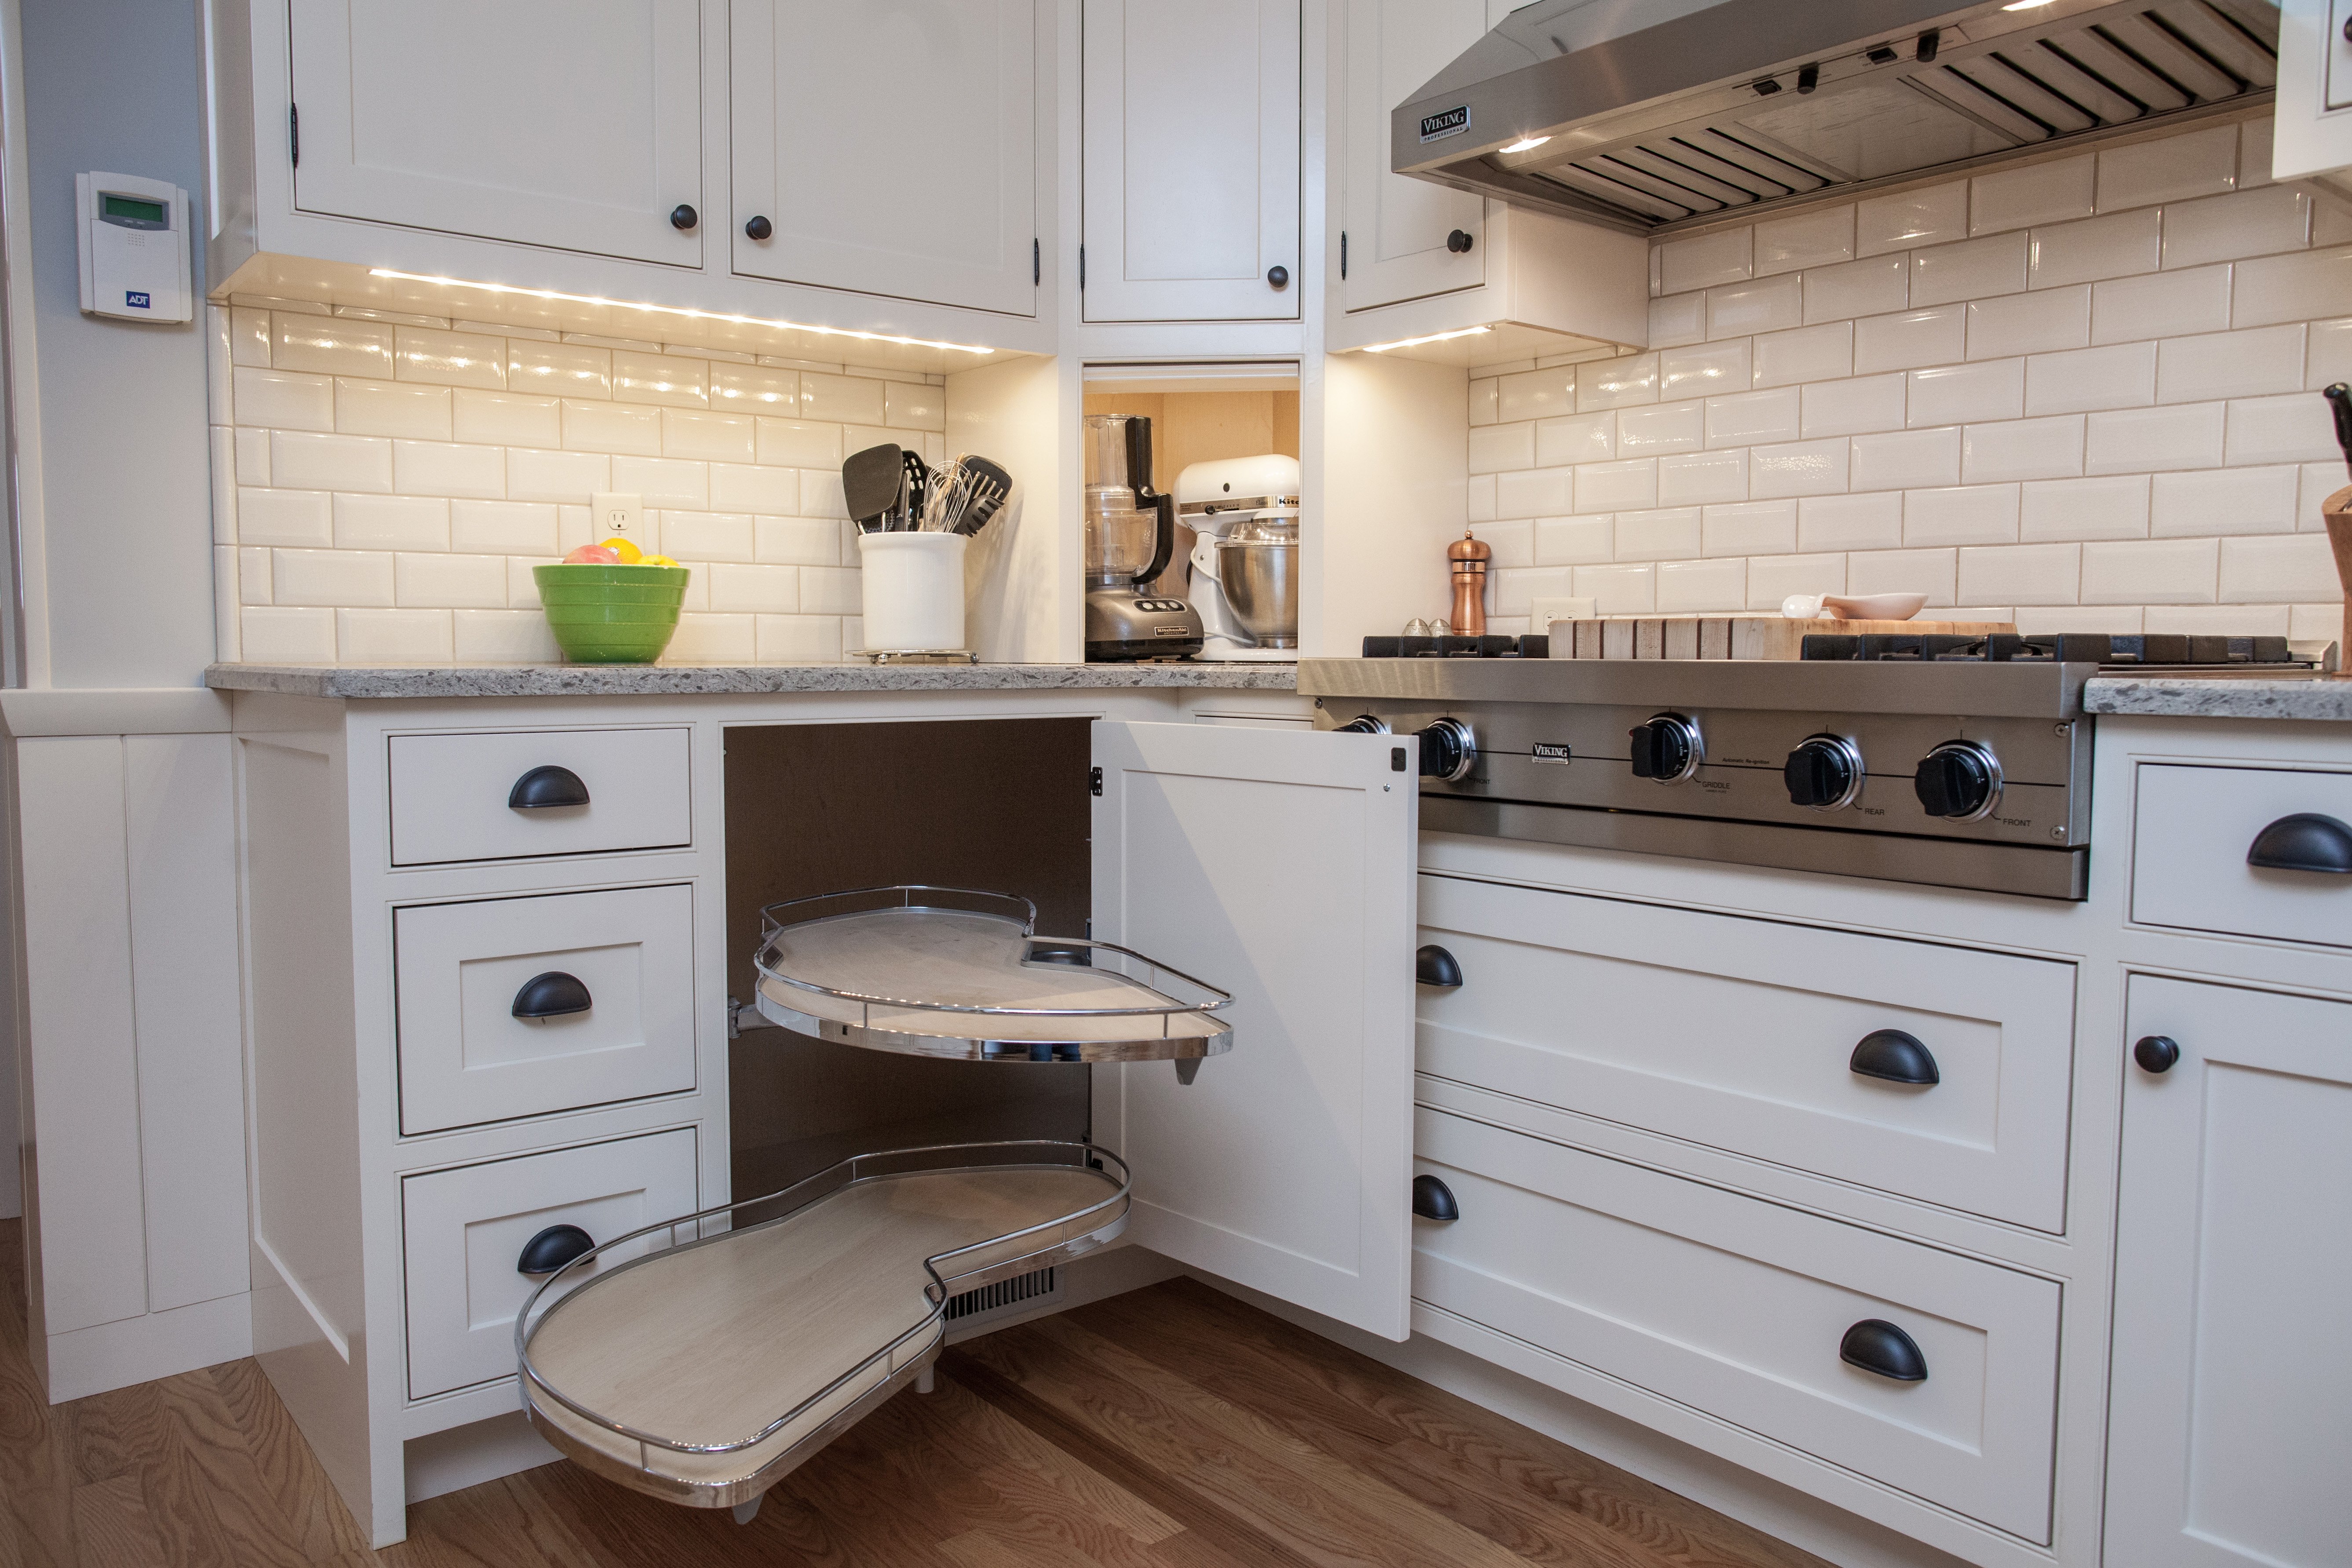 40 Get Kitchen Appliance Garage Cabinet Images Desain Interior Exterior